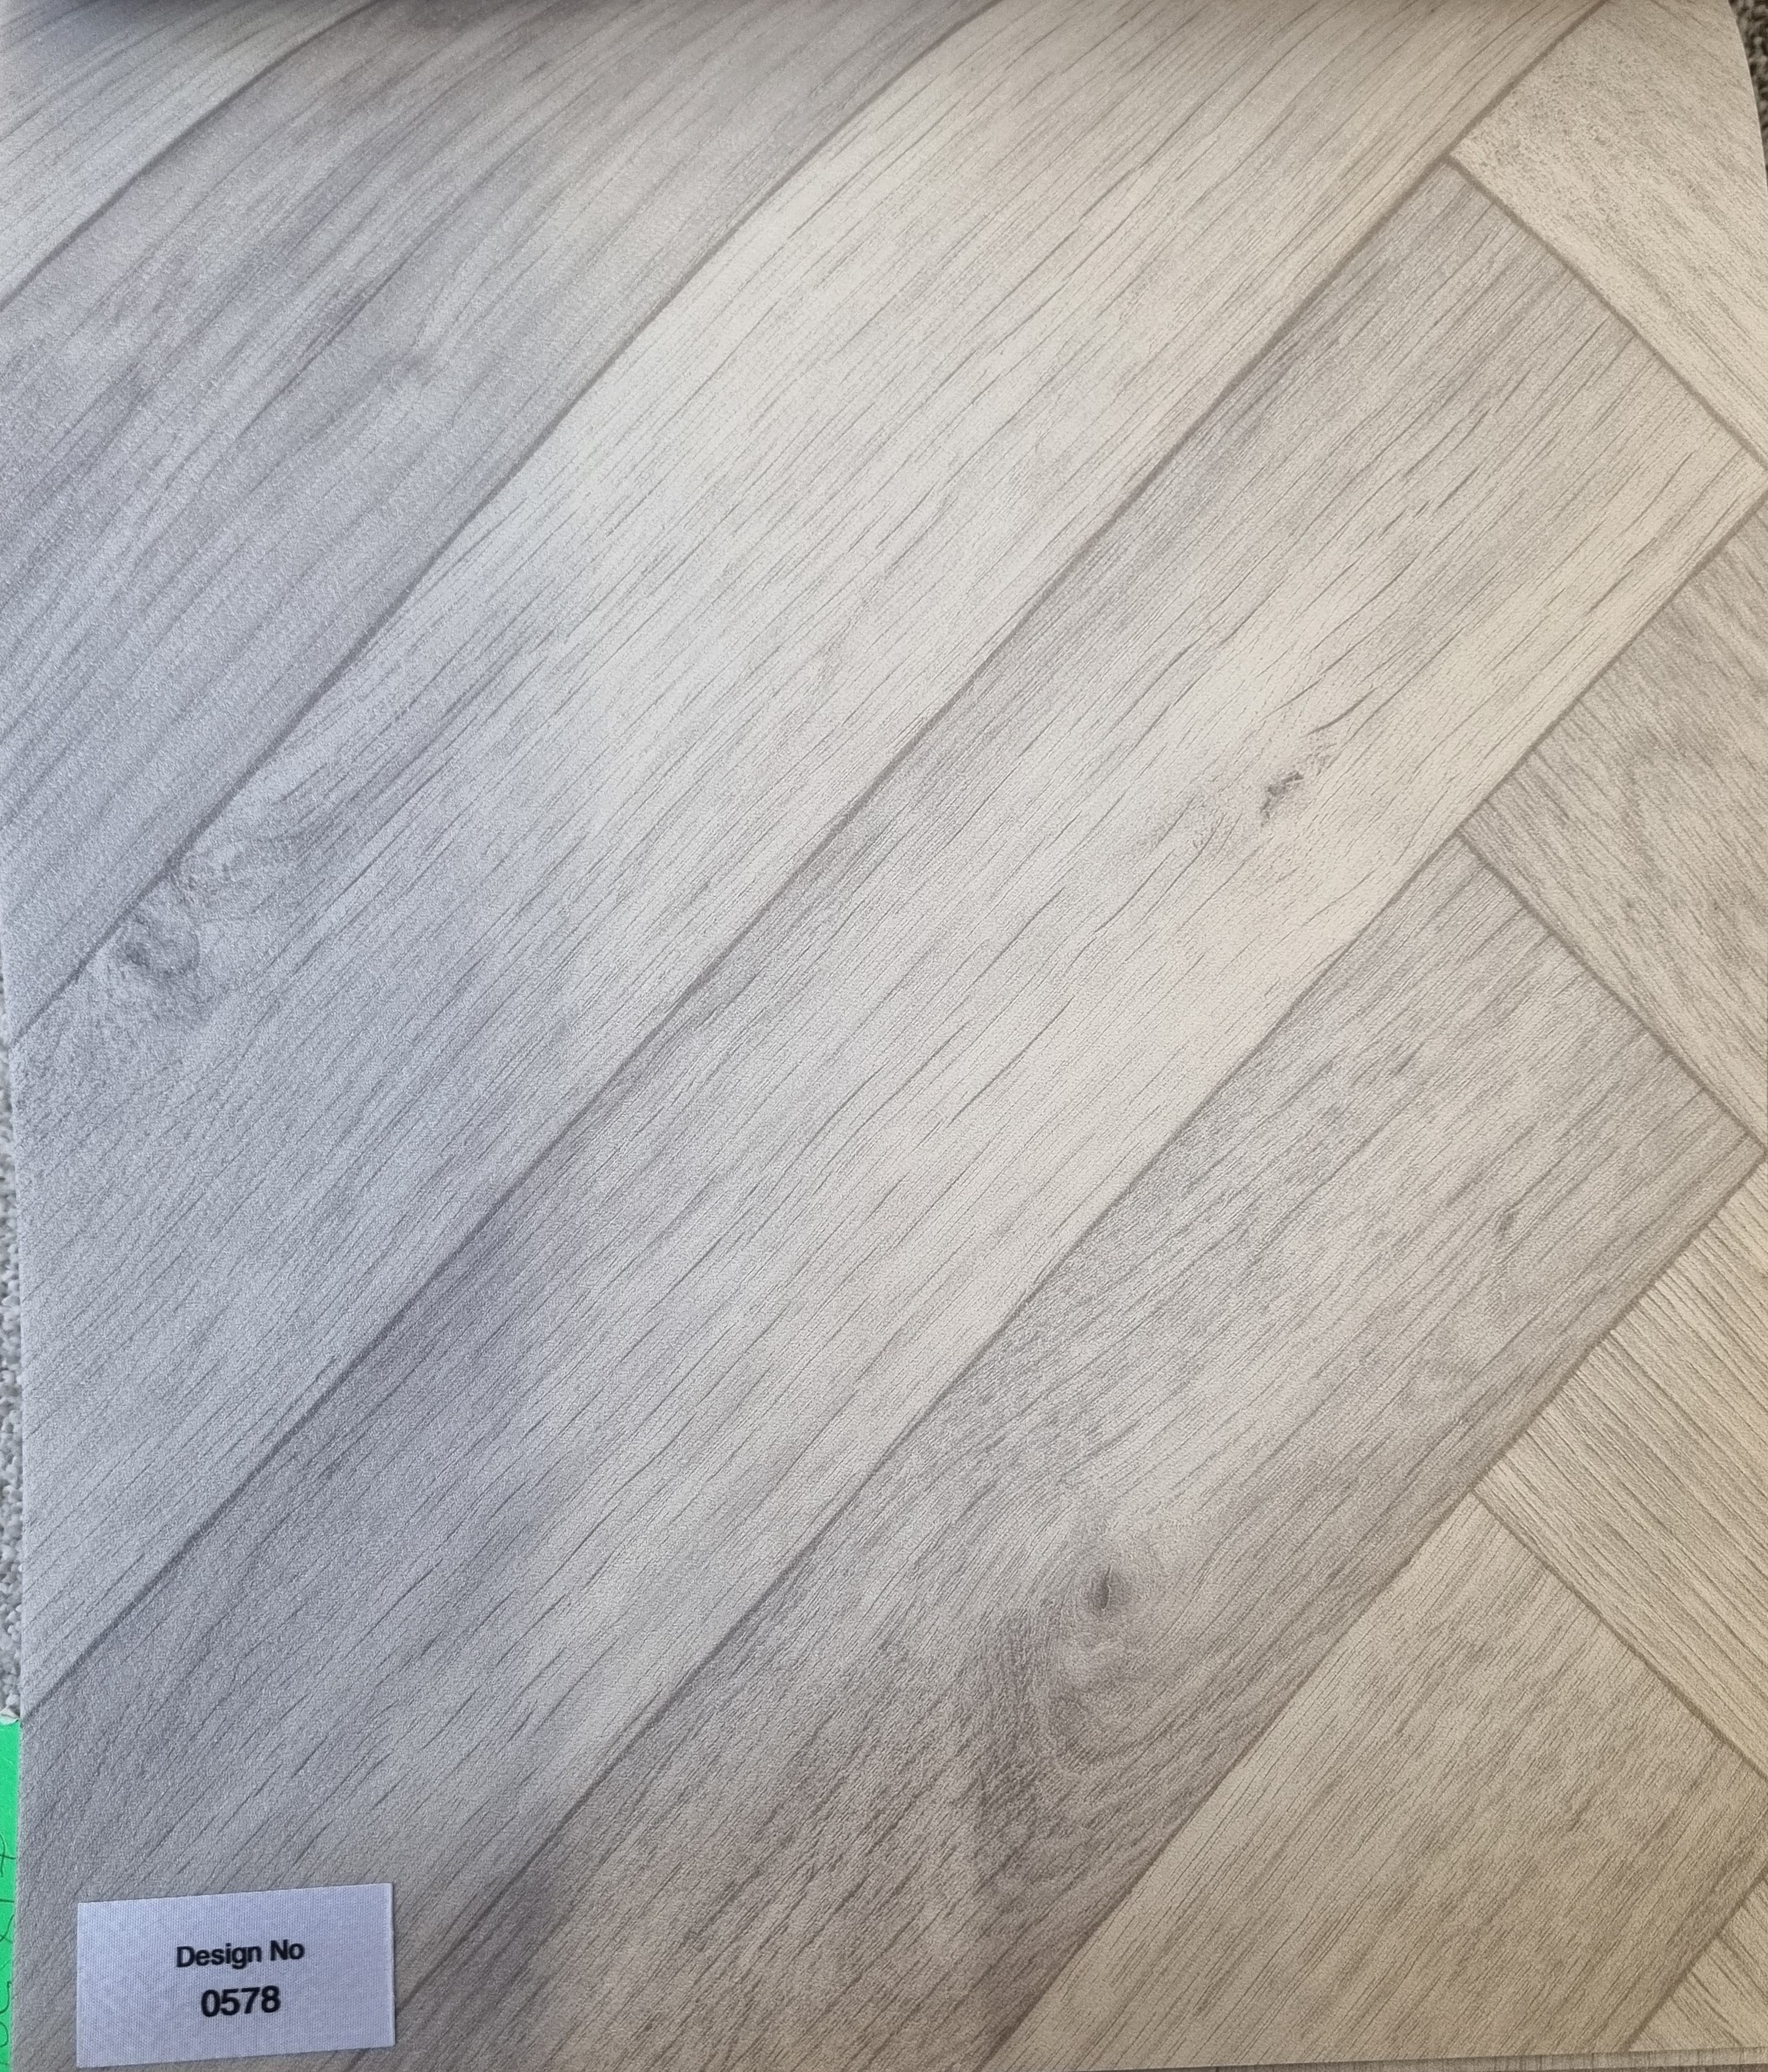 Smartex vinyl flooring